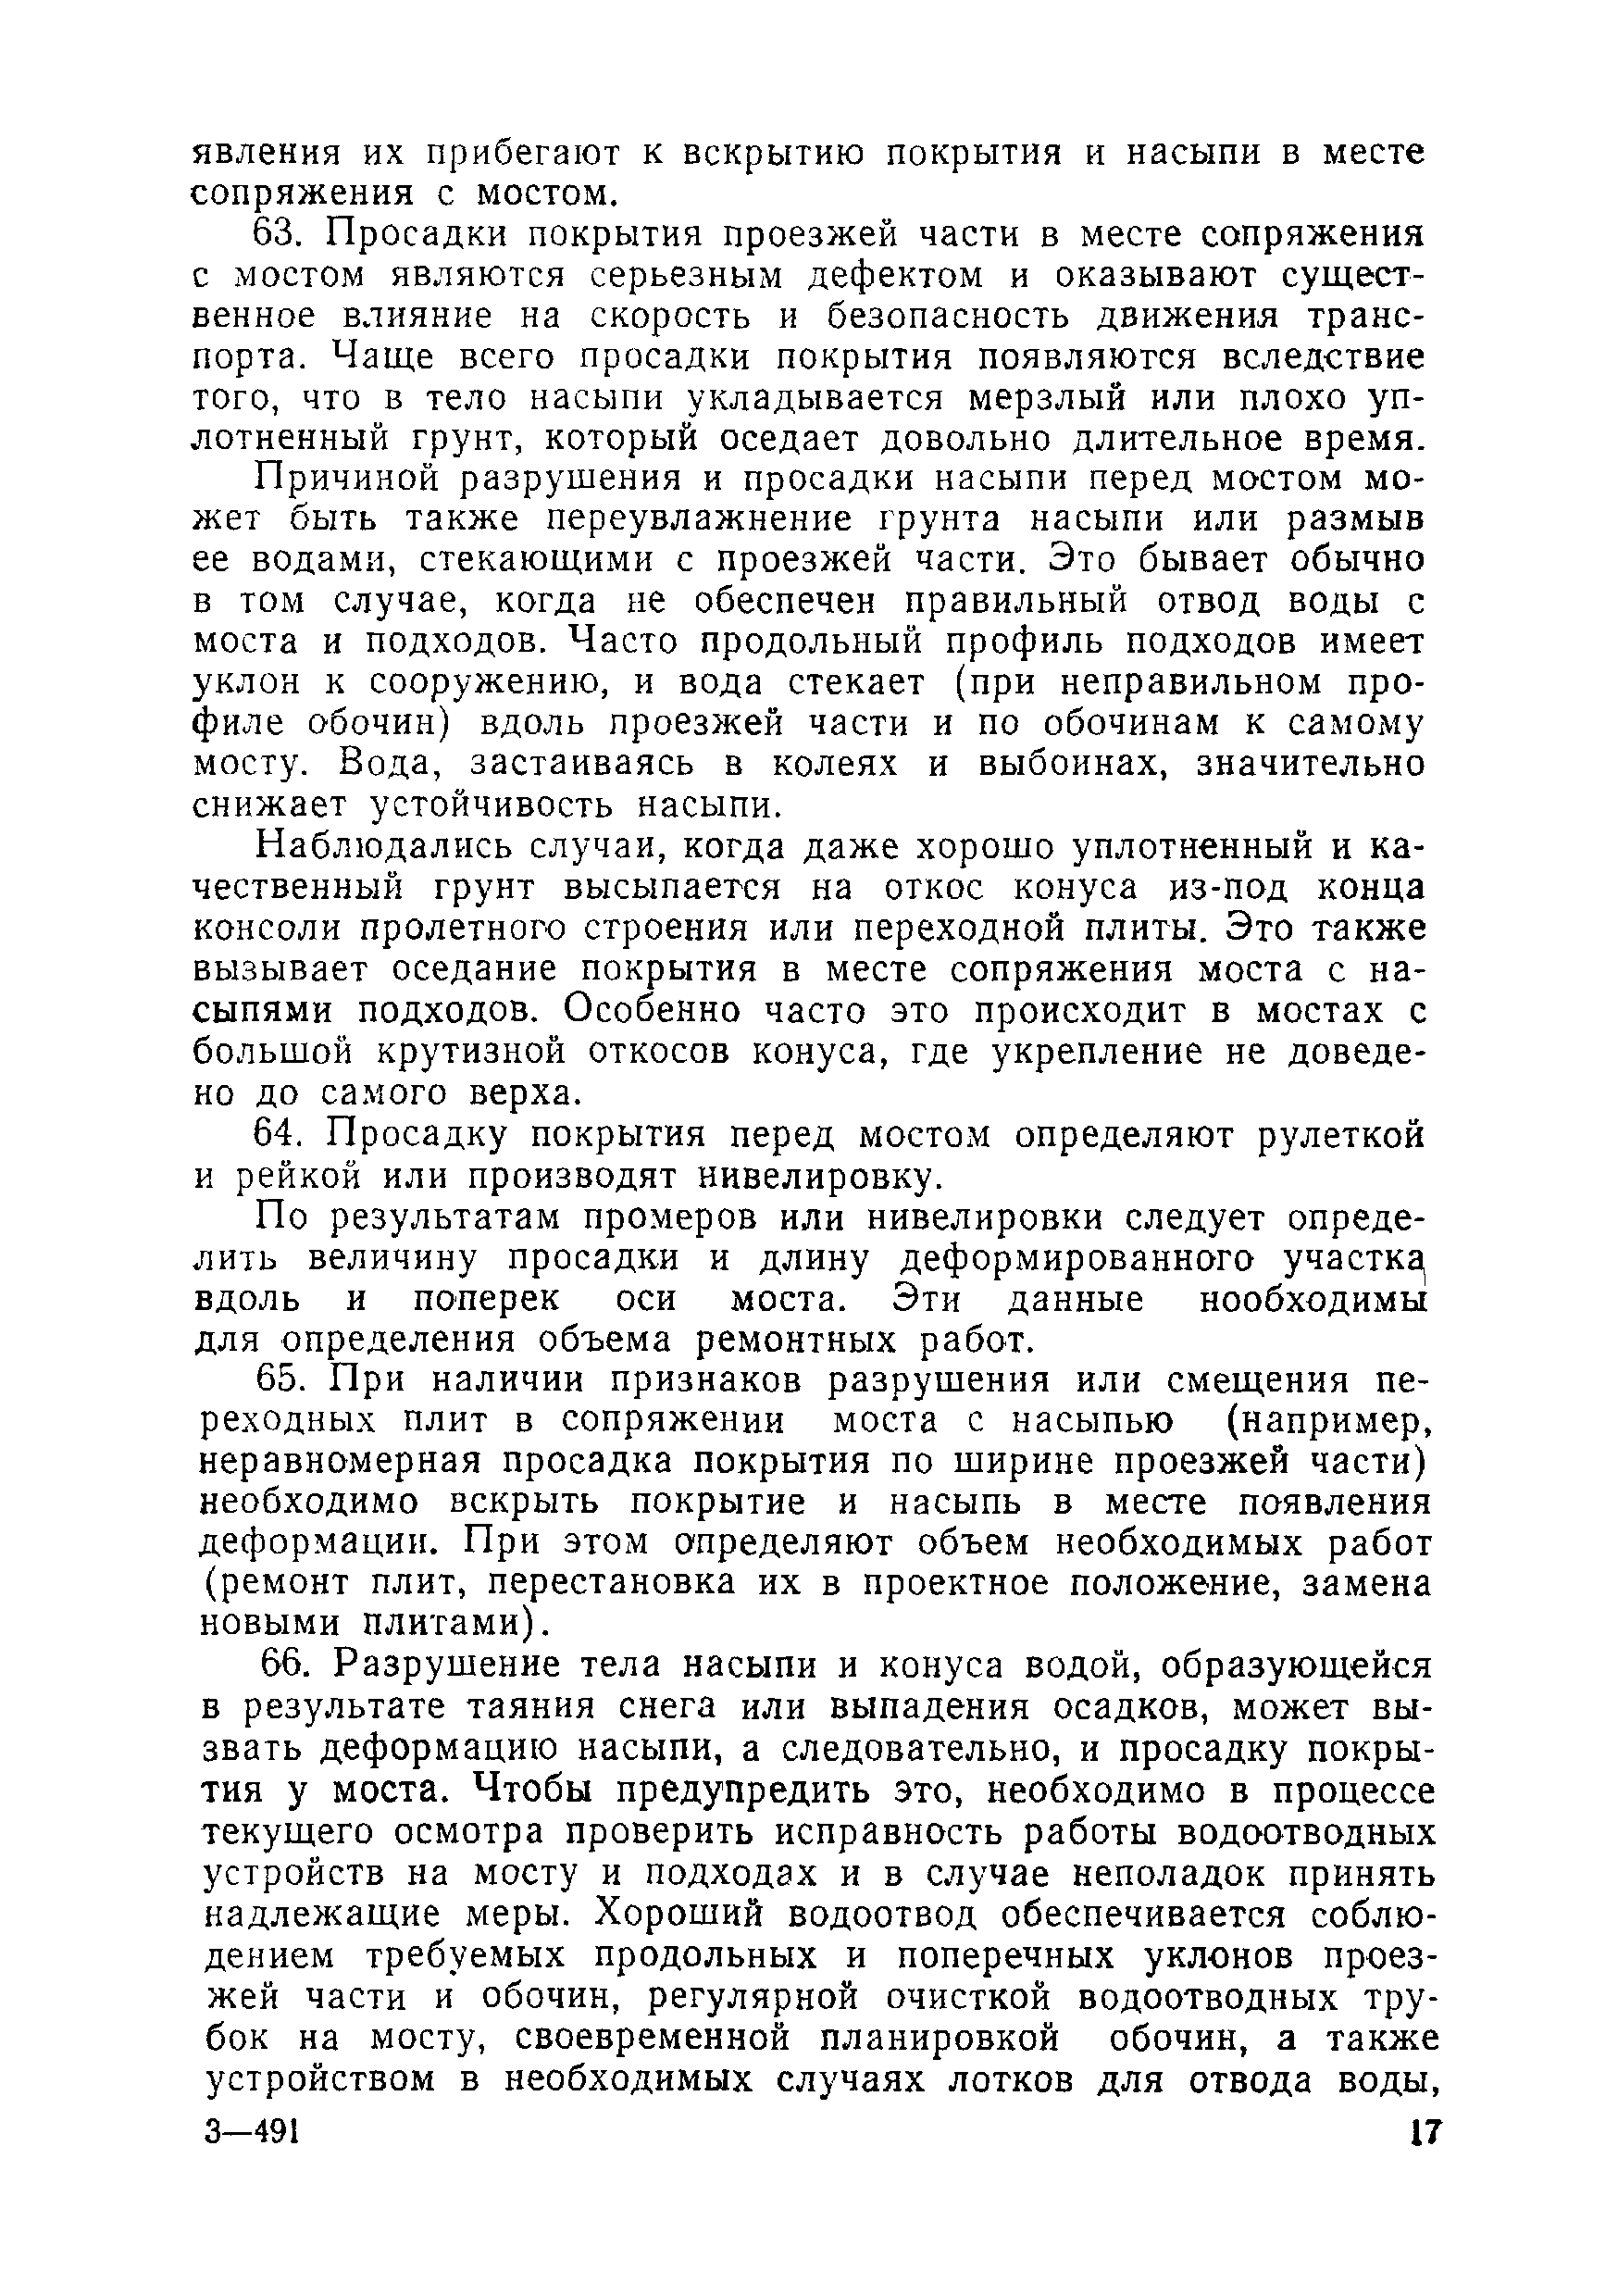 ВСН 1-69/Минавтодор РСФСР